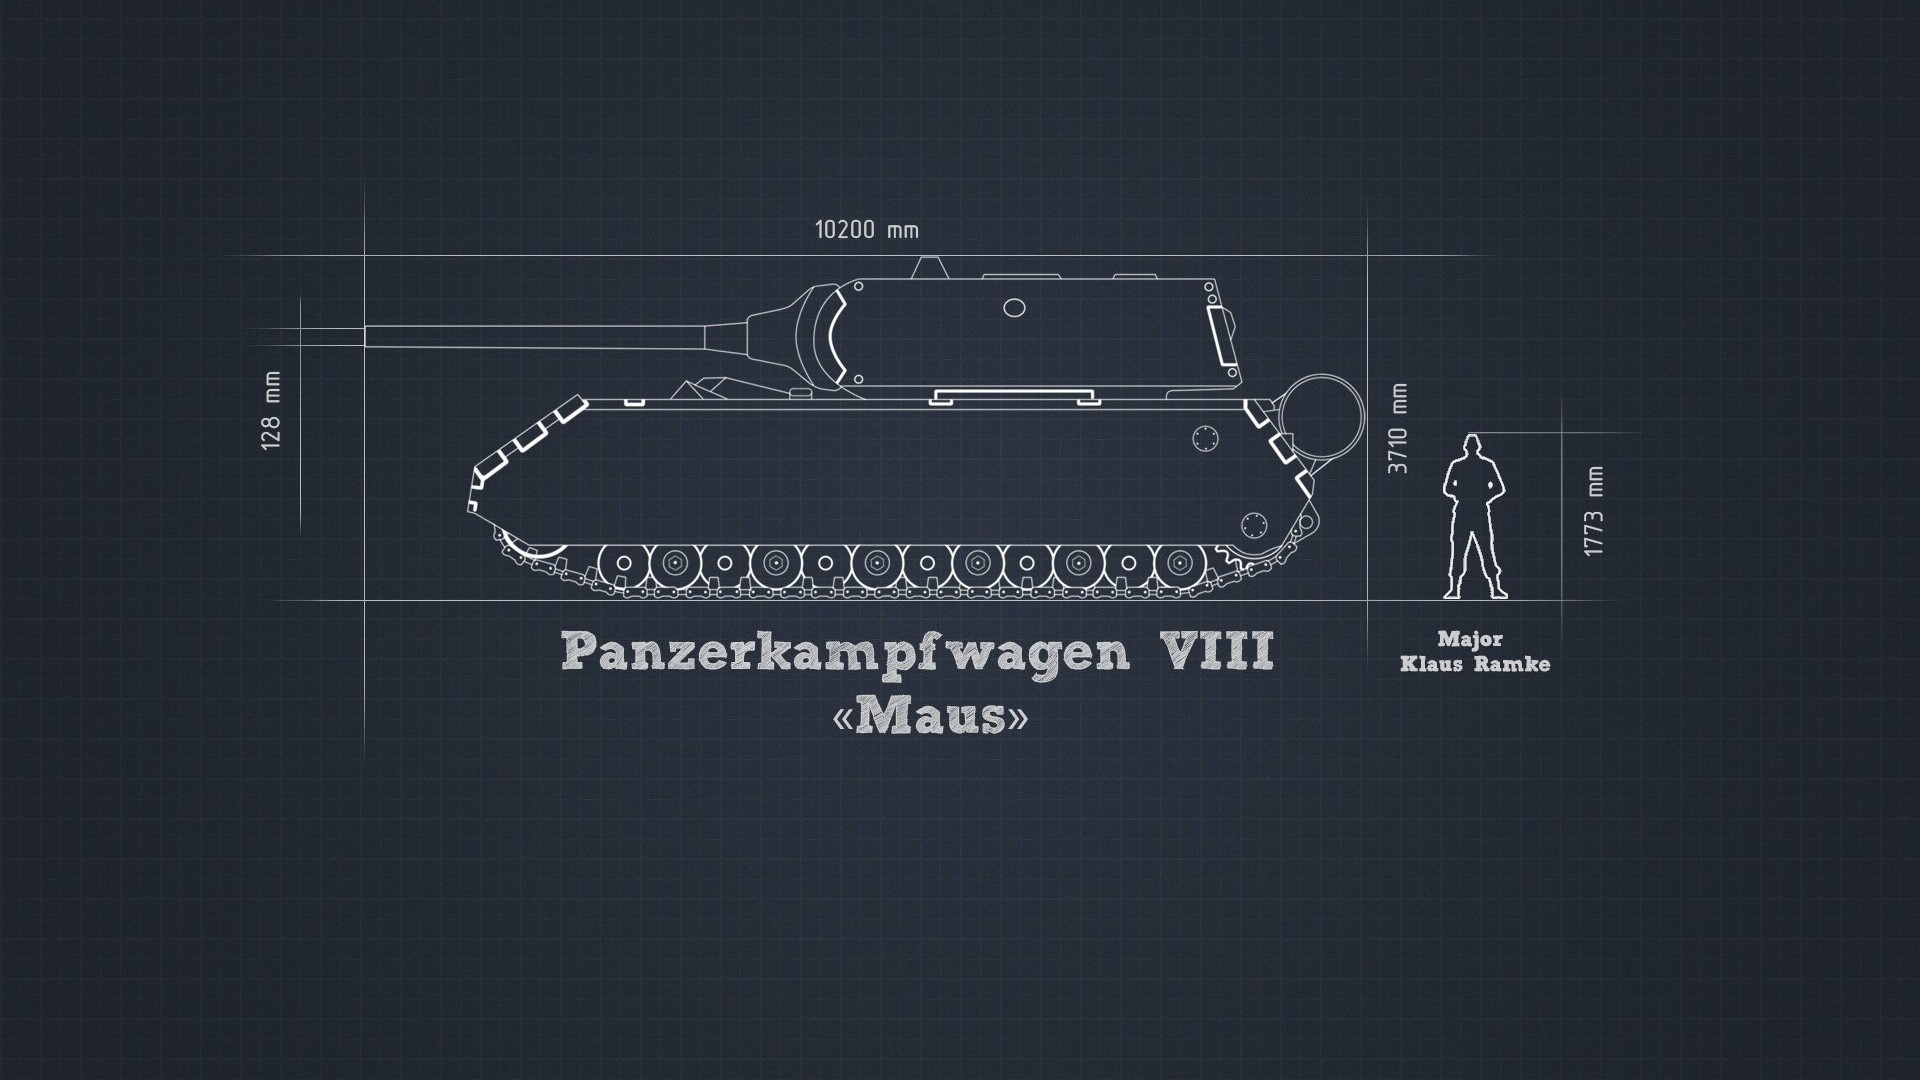 Мир танков чертежи